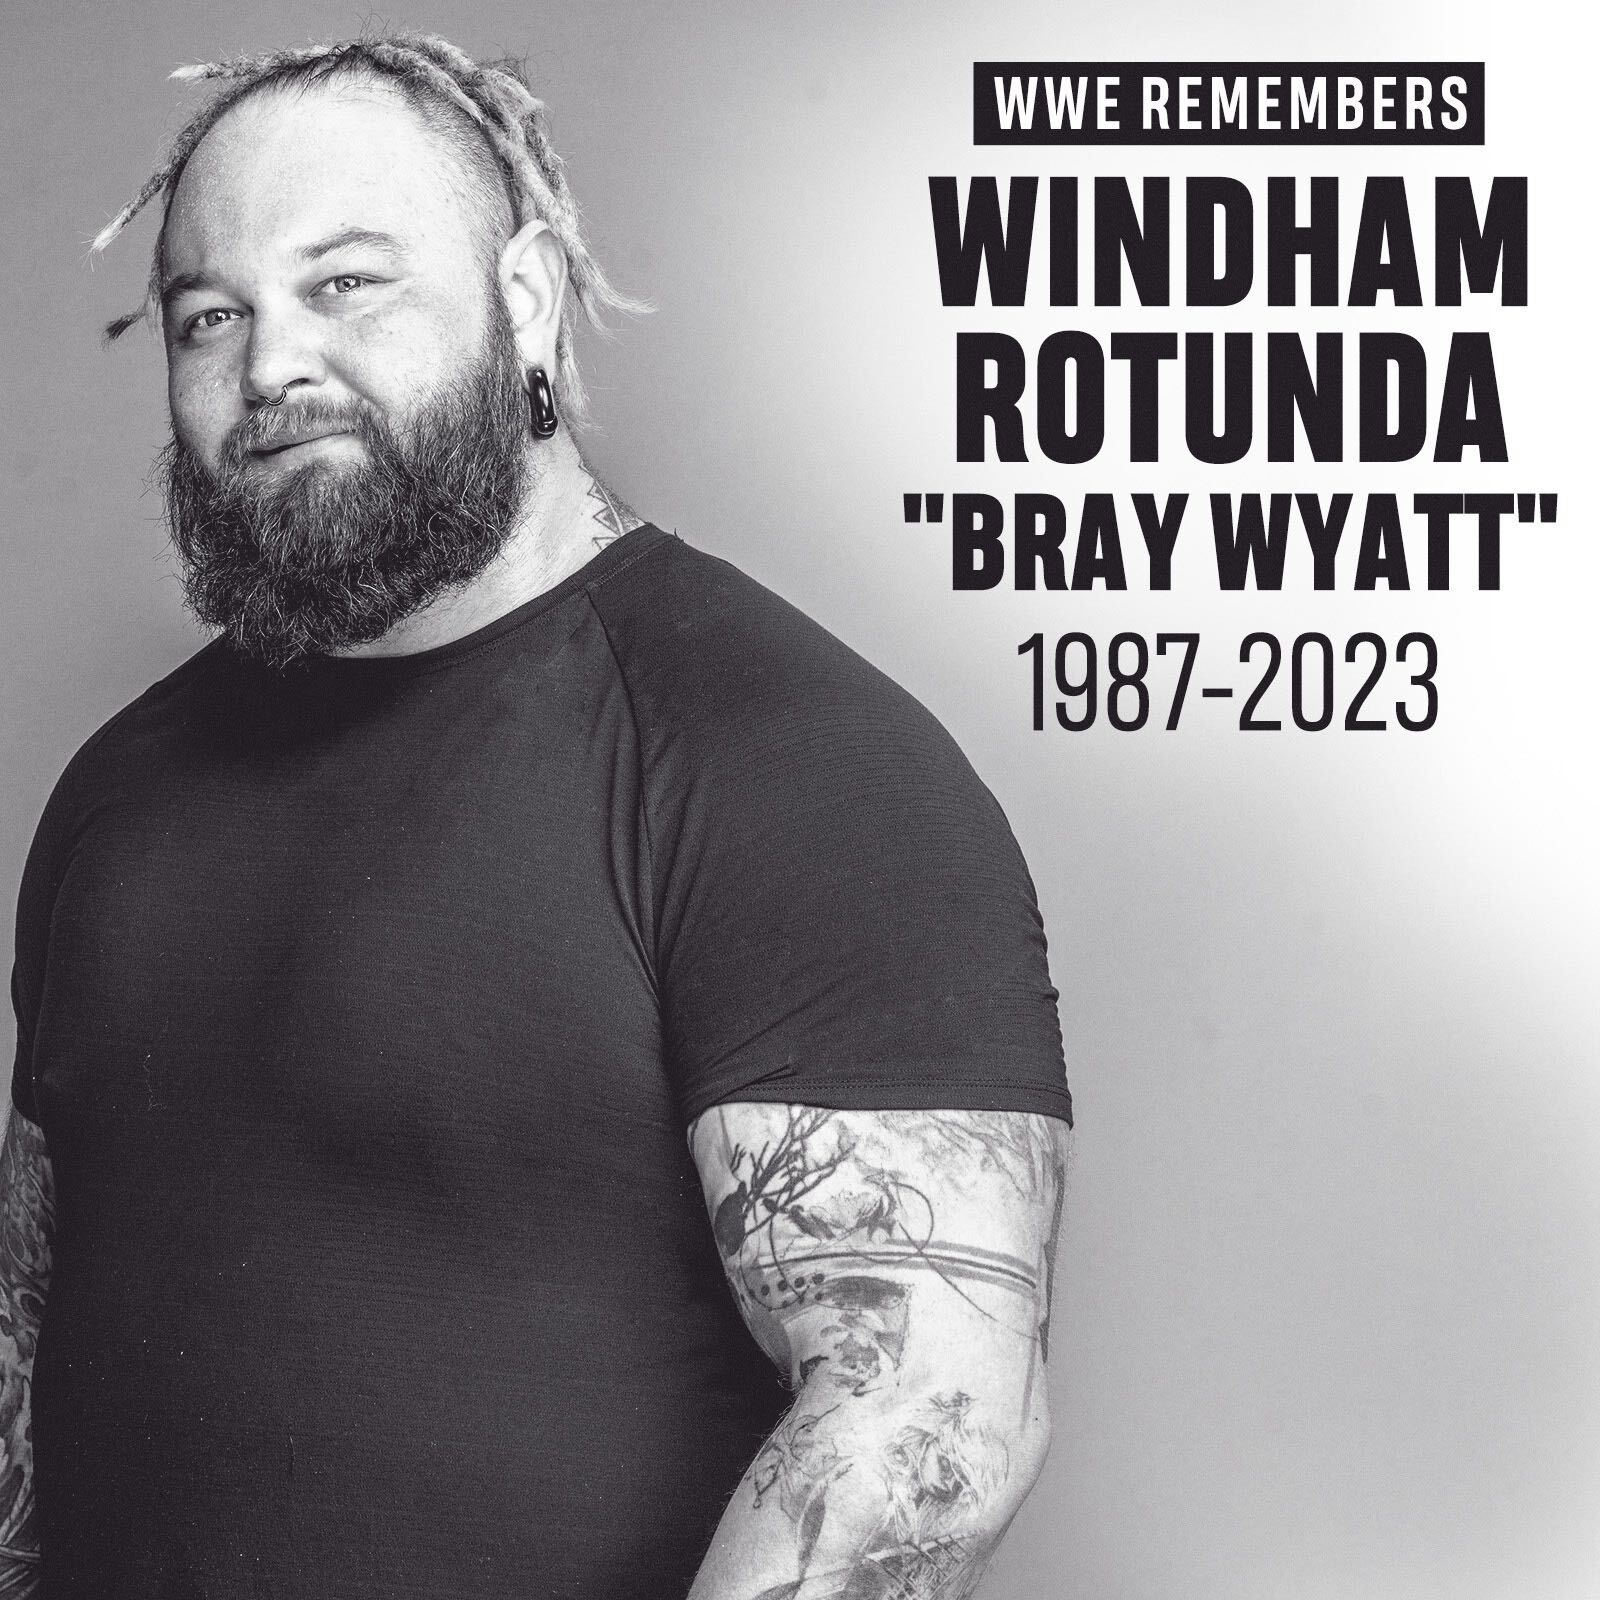 Windham Rotunda "Bray Wyatt"